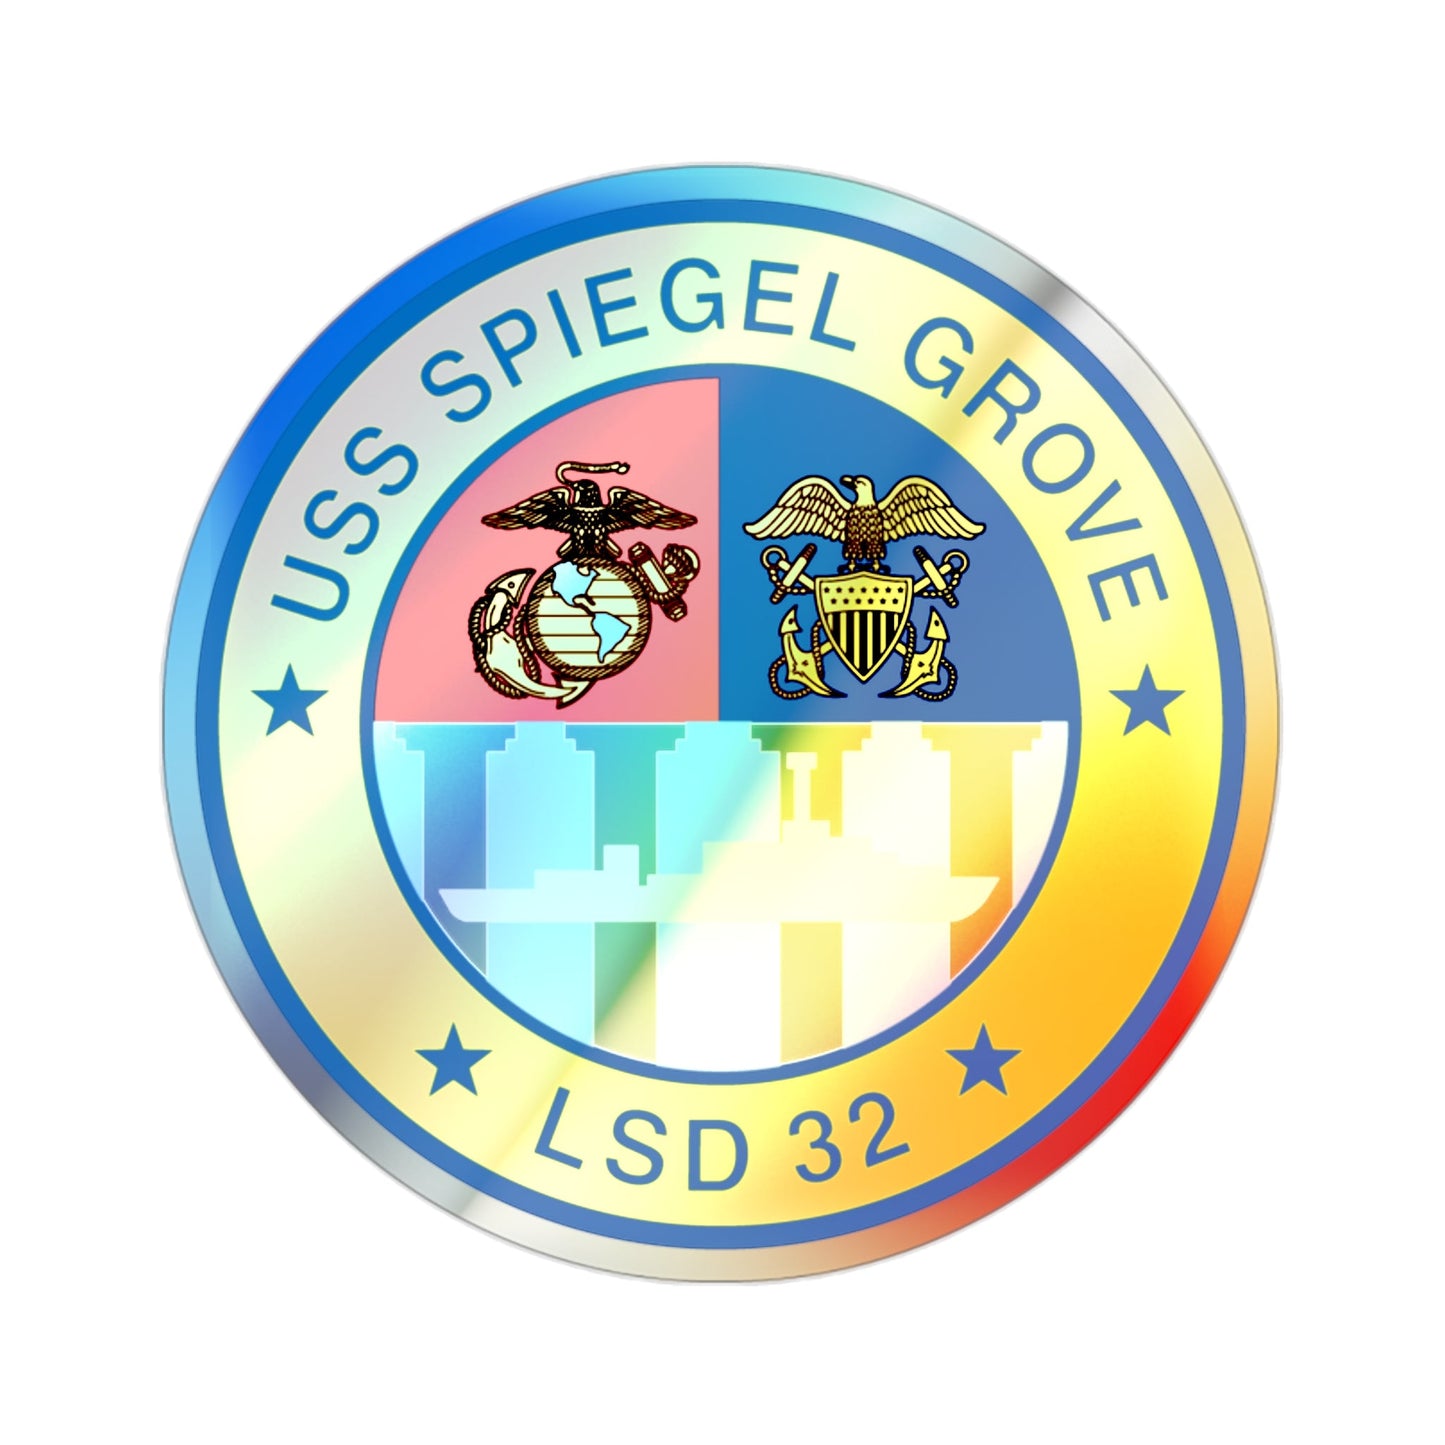 USS Spiegel Grove LSD 32 (U.S. Navy) Holographic STICKER Die-Cut Vinyl Decal-2 Inch-The Sticker Space